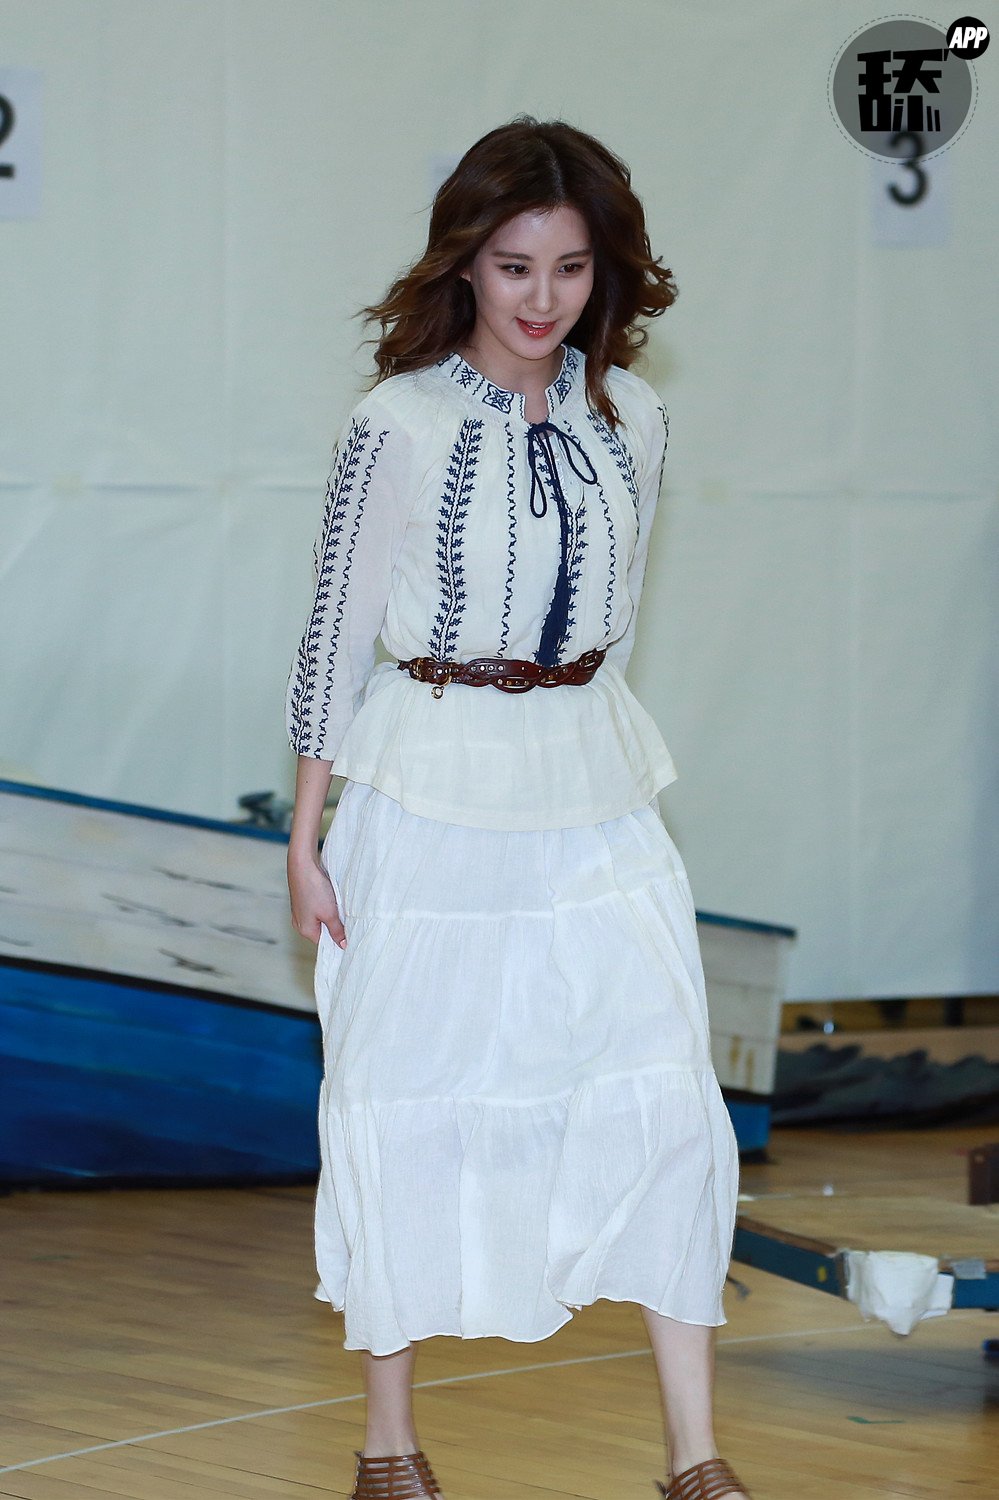 [OTHER][08-12-2015]SeoHyun tham dự vở nhạc kịch mới mang tên "Mamma Mia!" - Page 2 HZ_rcghB9L-3000x3000